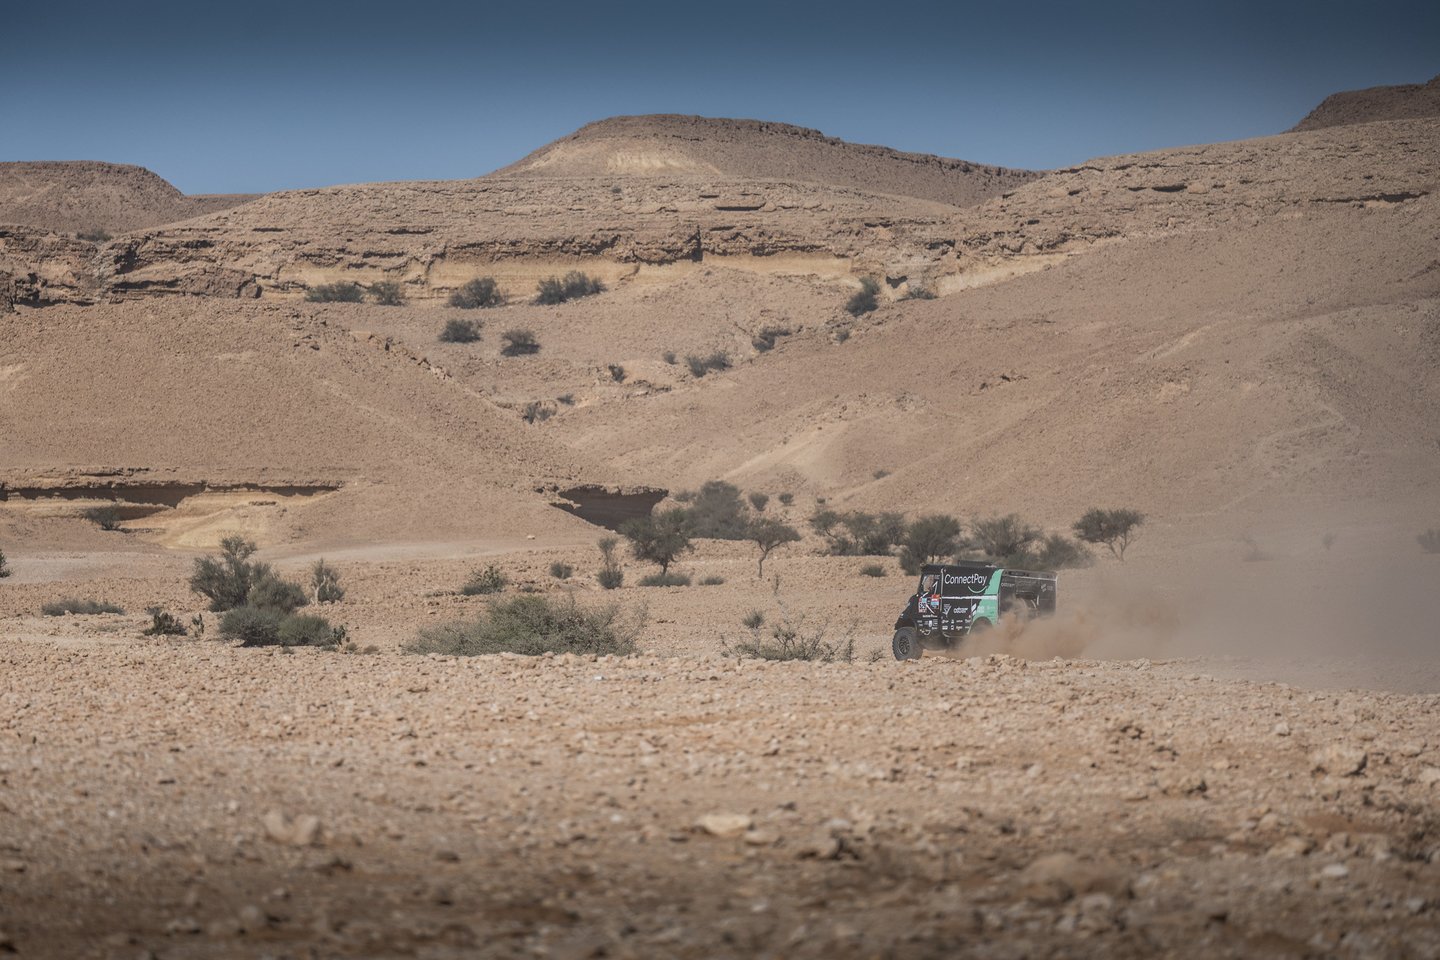 Penktadienį Saudo Arabijoje finišavo šeštasis greičio ruožas.<br>„ConnectPay Racing“ komandos nuotr.